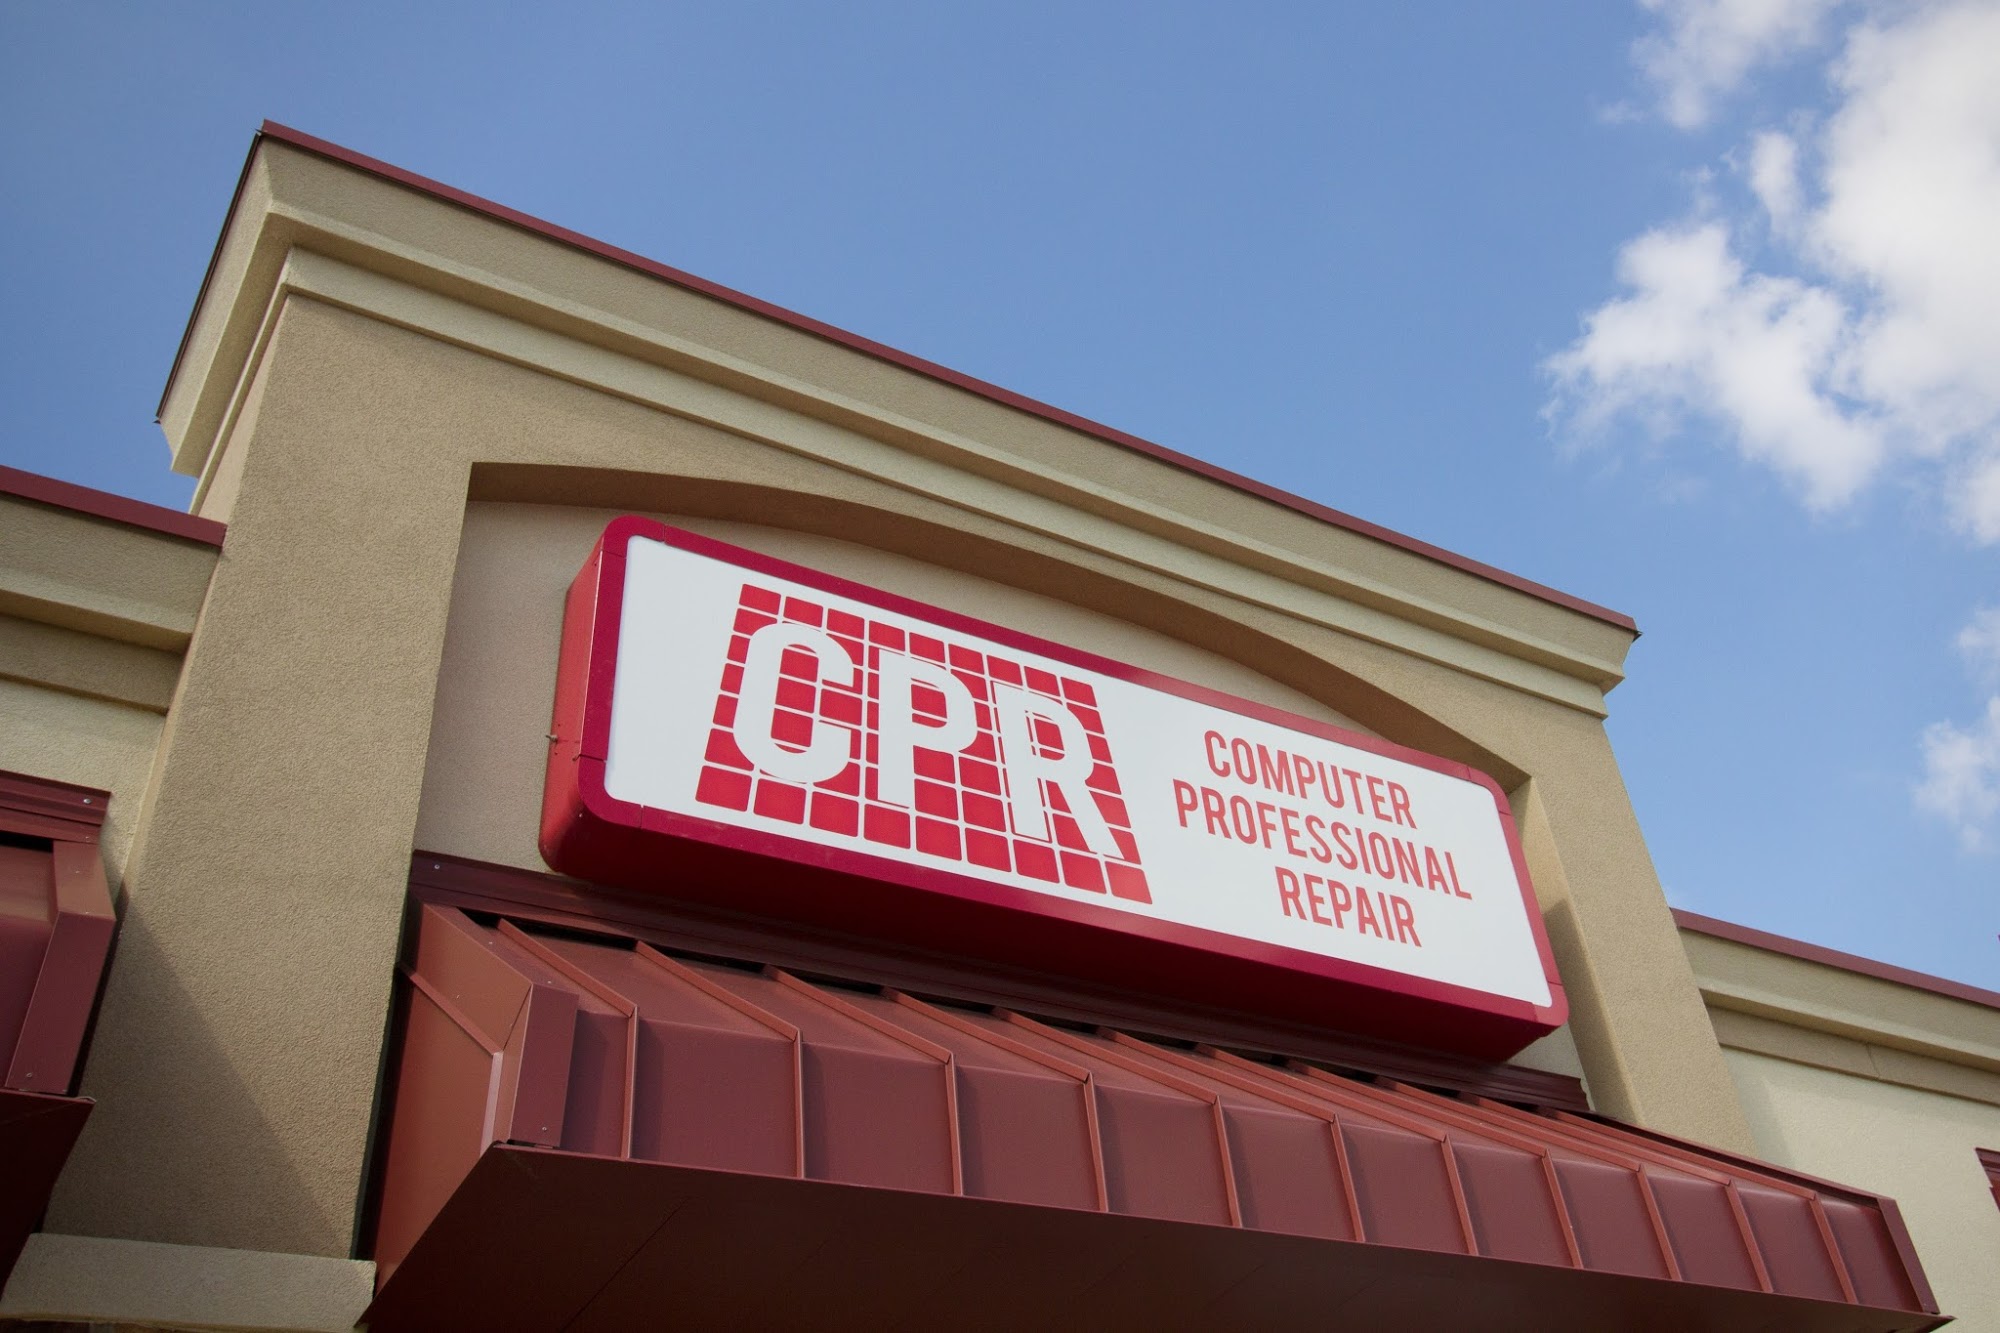 CPR - Computer Professional Repair